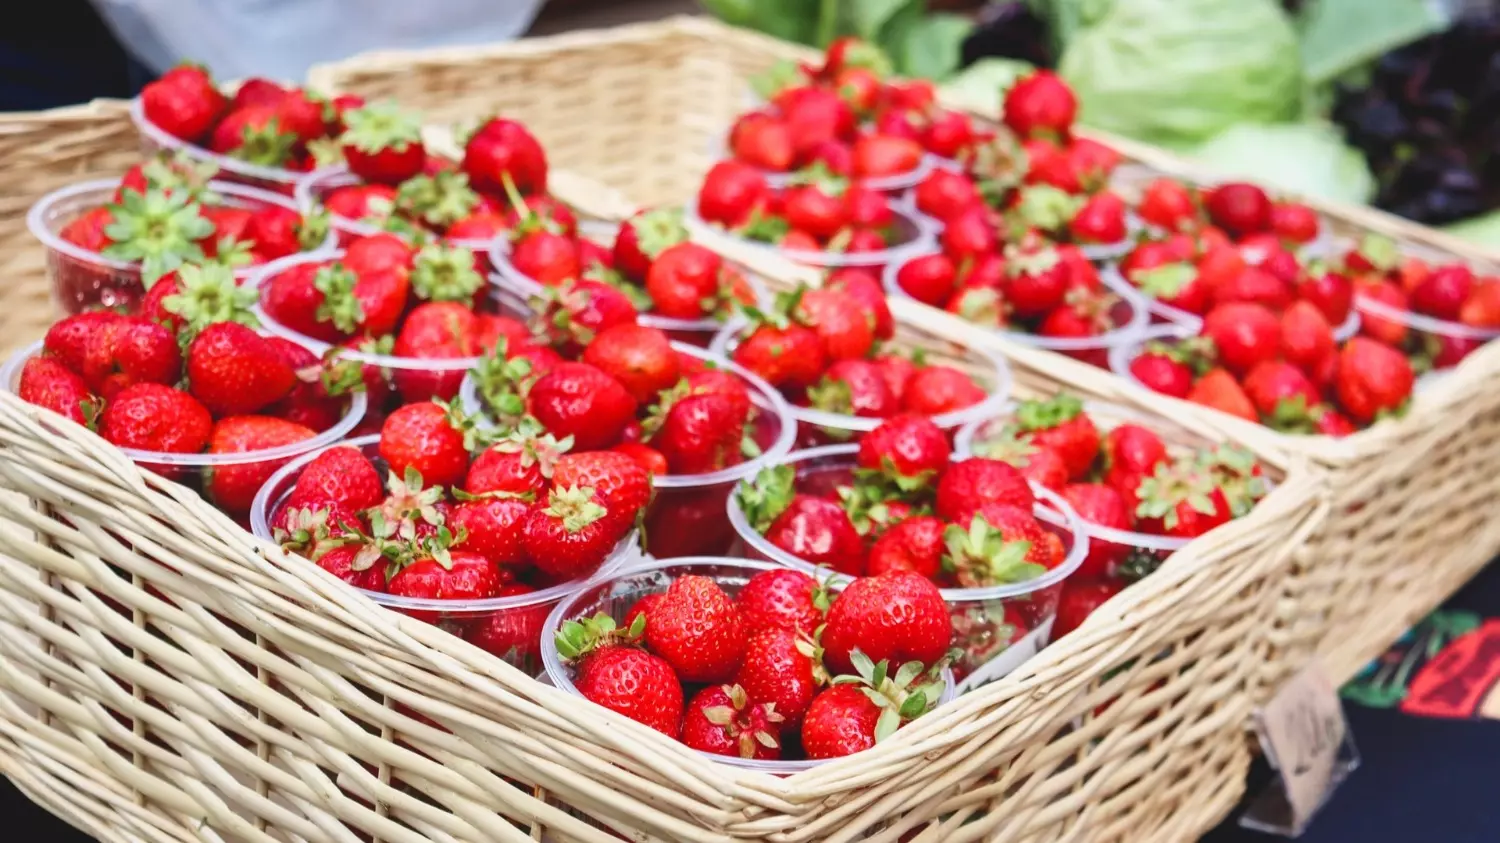 Употребление горсти ягод снижает риск развития хронических заболеваний и преждевременной смерти